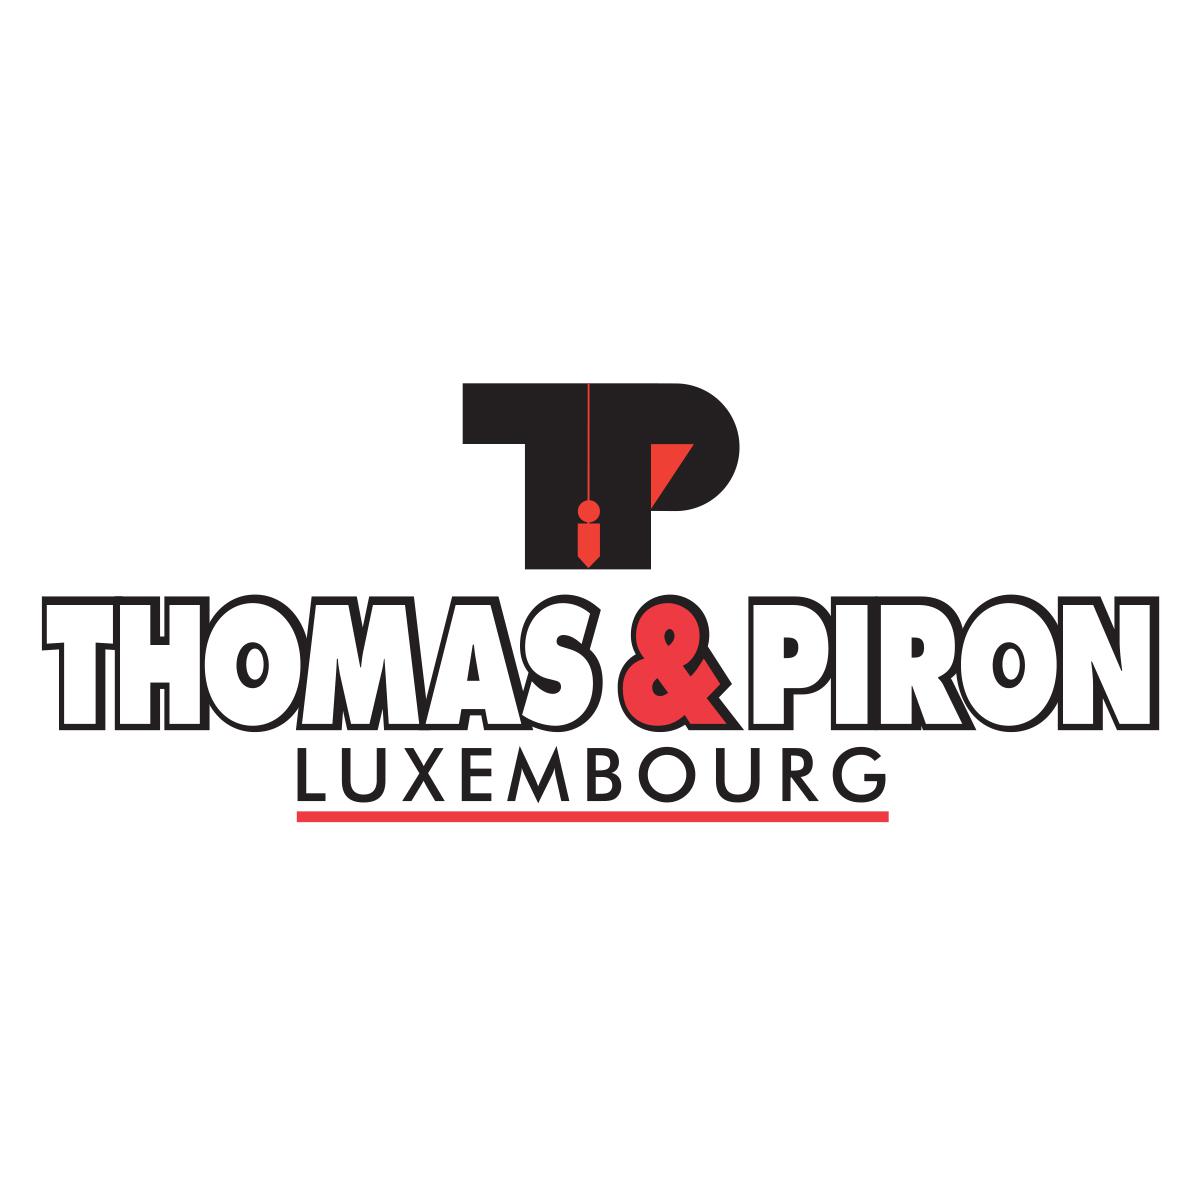 Thomas & Piron Luxembourg